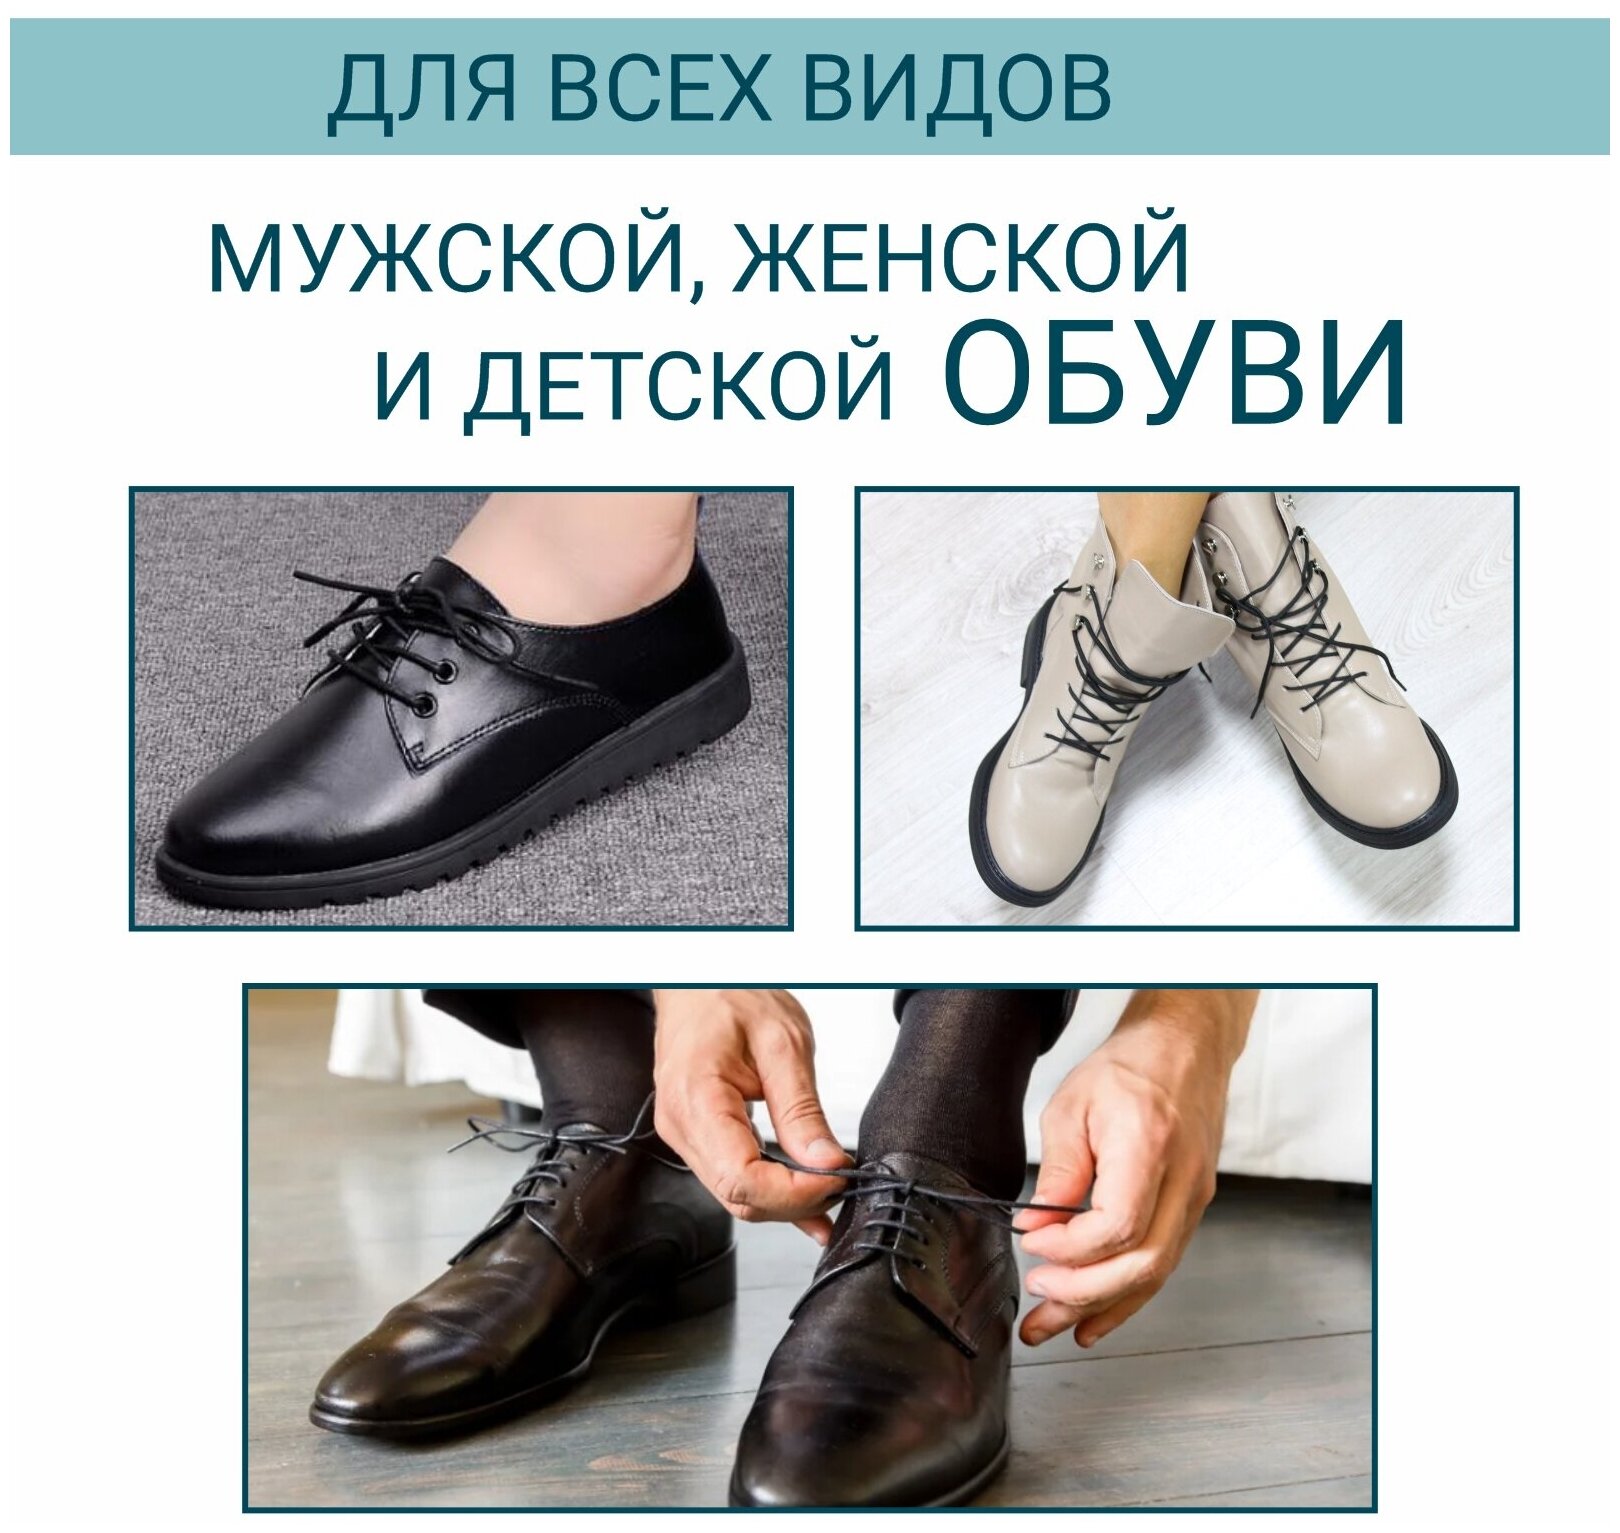 Шнурки для обуви GUIN Черные Тонкие Круглые 45 см, прочные шнурки для кроссовок, кед, ботинок, берцев с пропиткой, вощенные, универсальные - фотография № 5